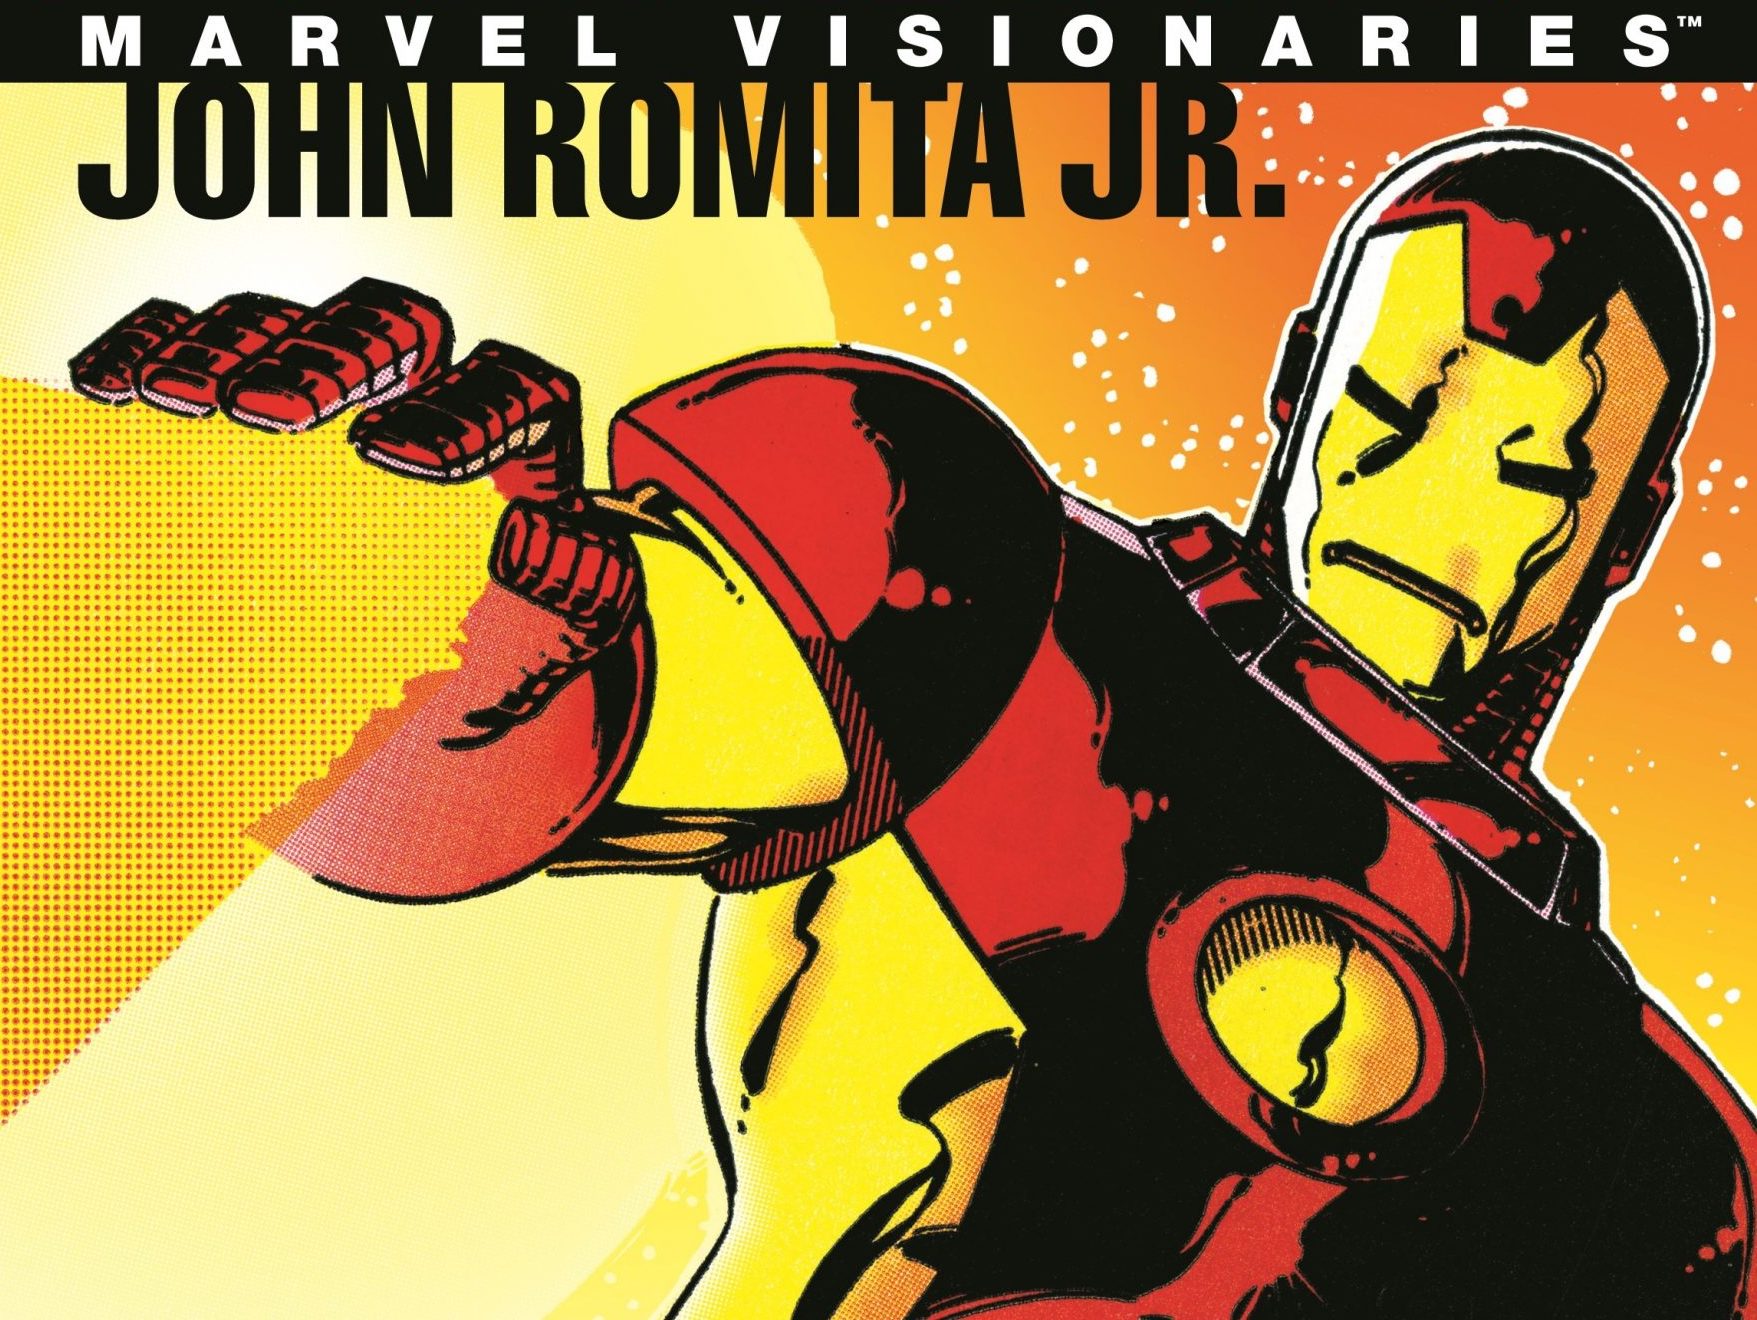 Marvel Visionaries: John Romita Jr. Review